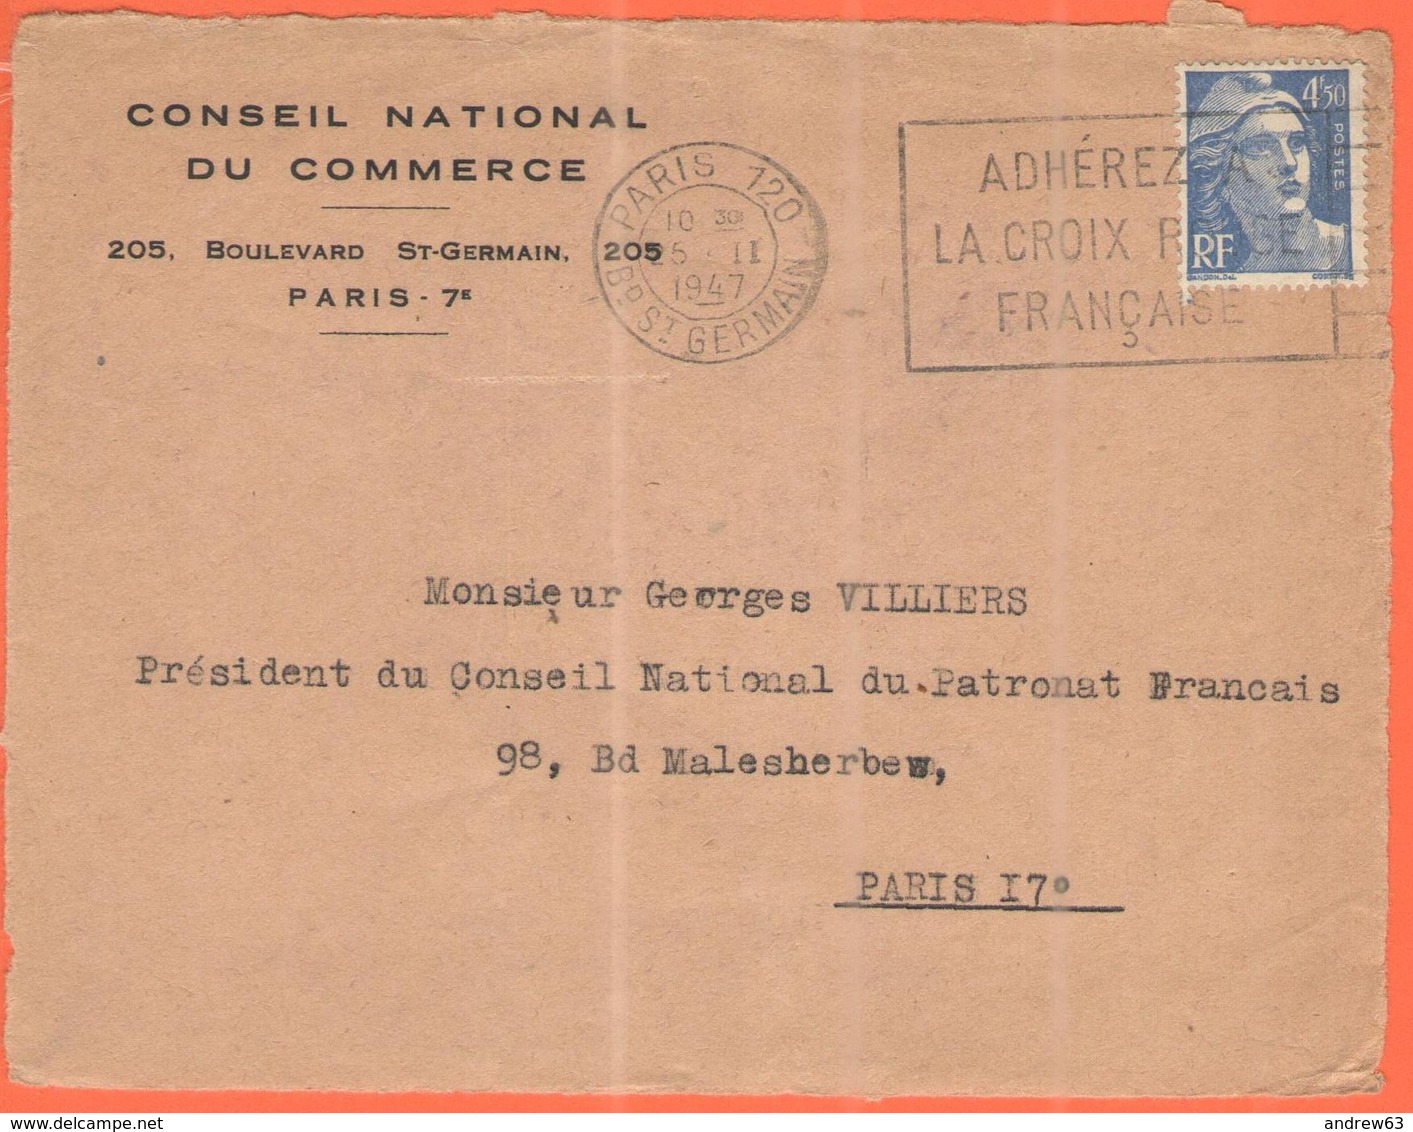 FRANCIA - France - 1947 - 4,50F Marianne De Gandon + Flamme Adhérez à La Croix Rouge Française - Conseil National Du Com - Storia Postale